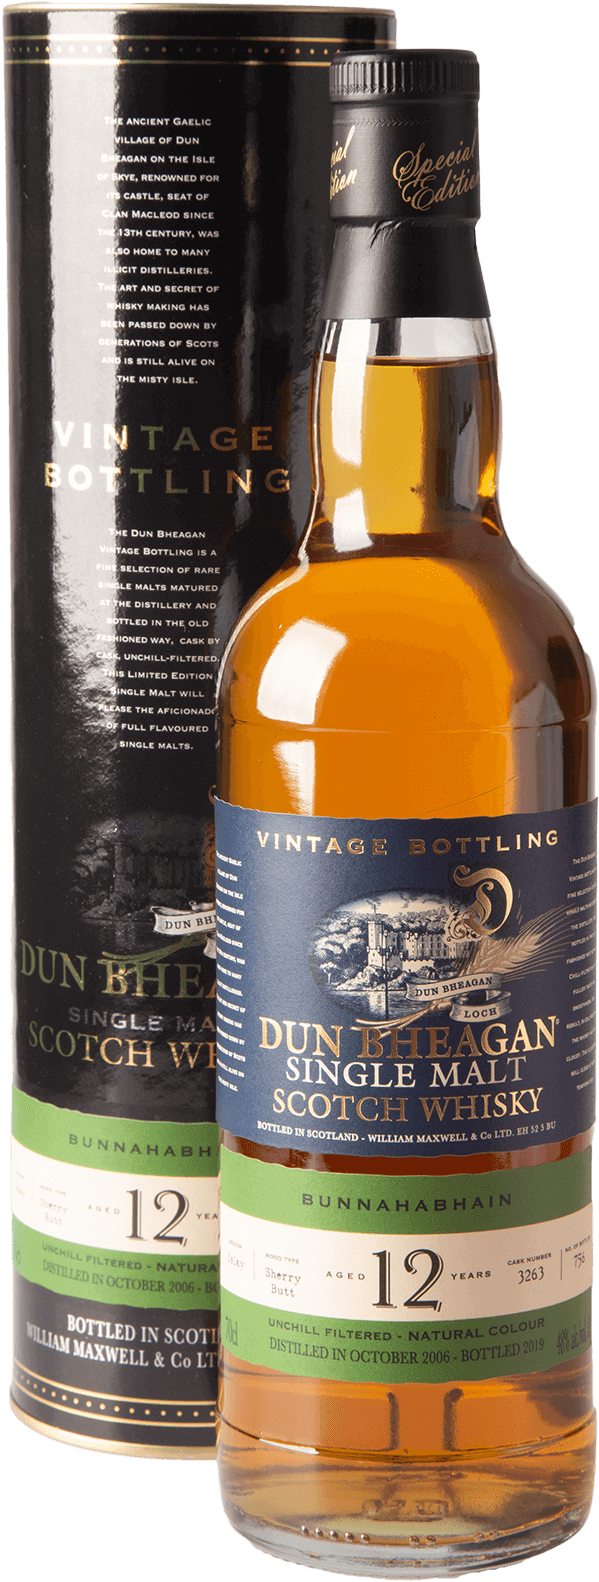 Bunnahabhain 12 Jahre 2006/2019 Dun Bheagan Sherry Cask Whisky 48 Prozent